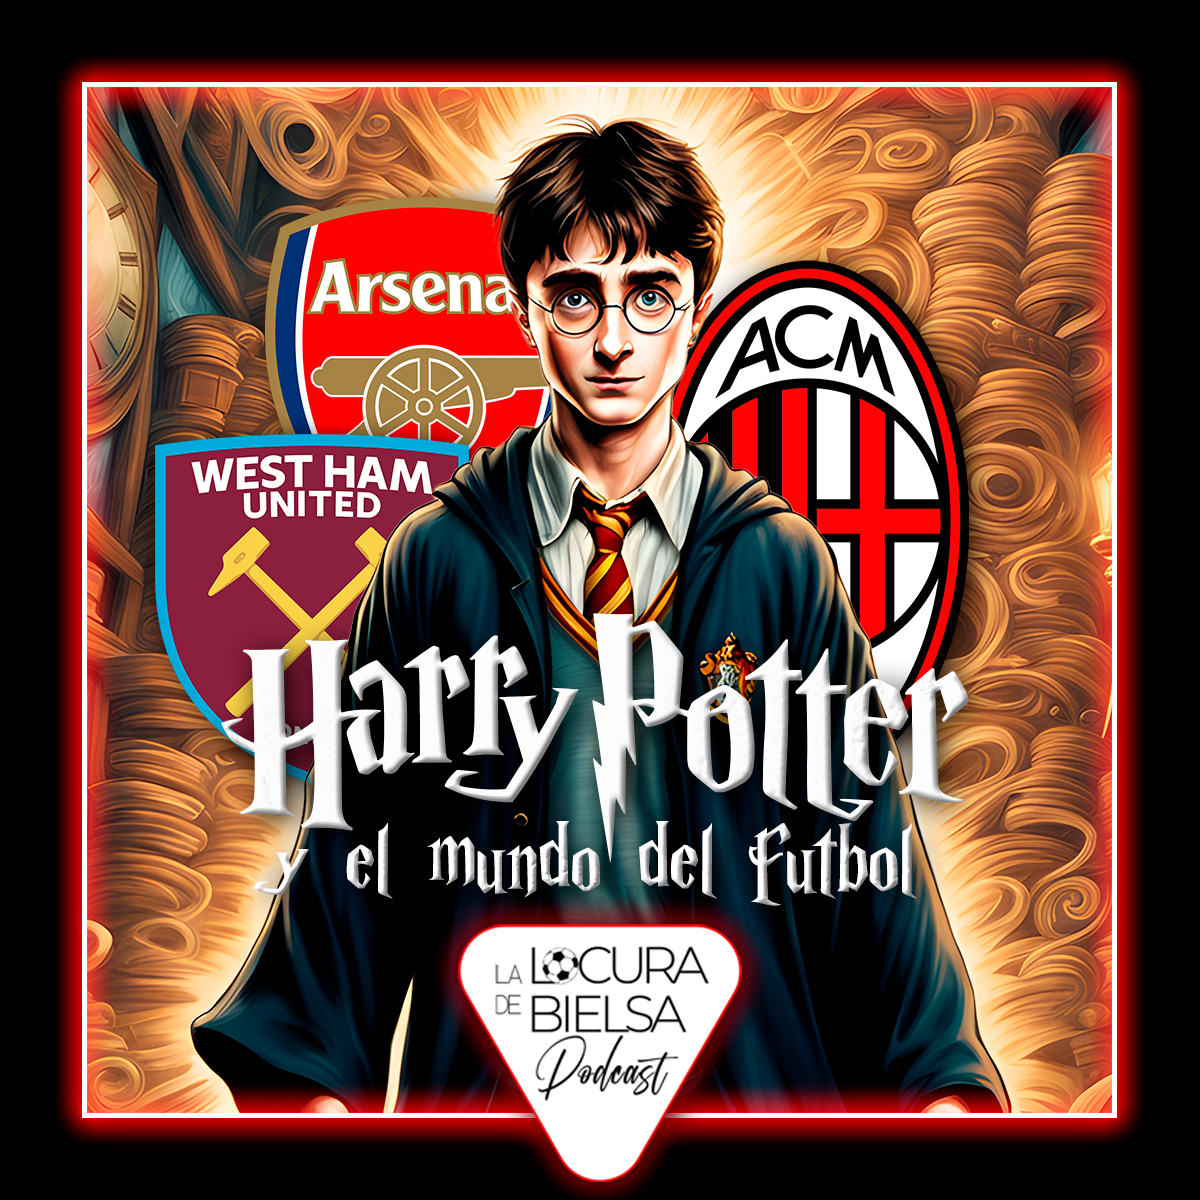 Harry potter y el mundo del futbol Locura de Bielsa